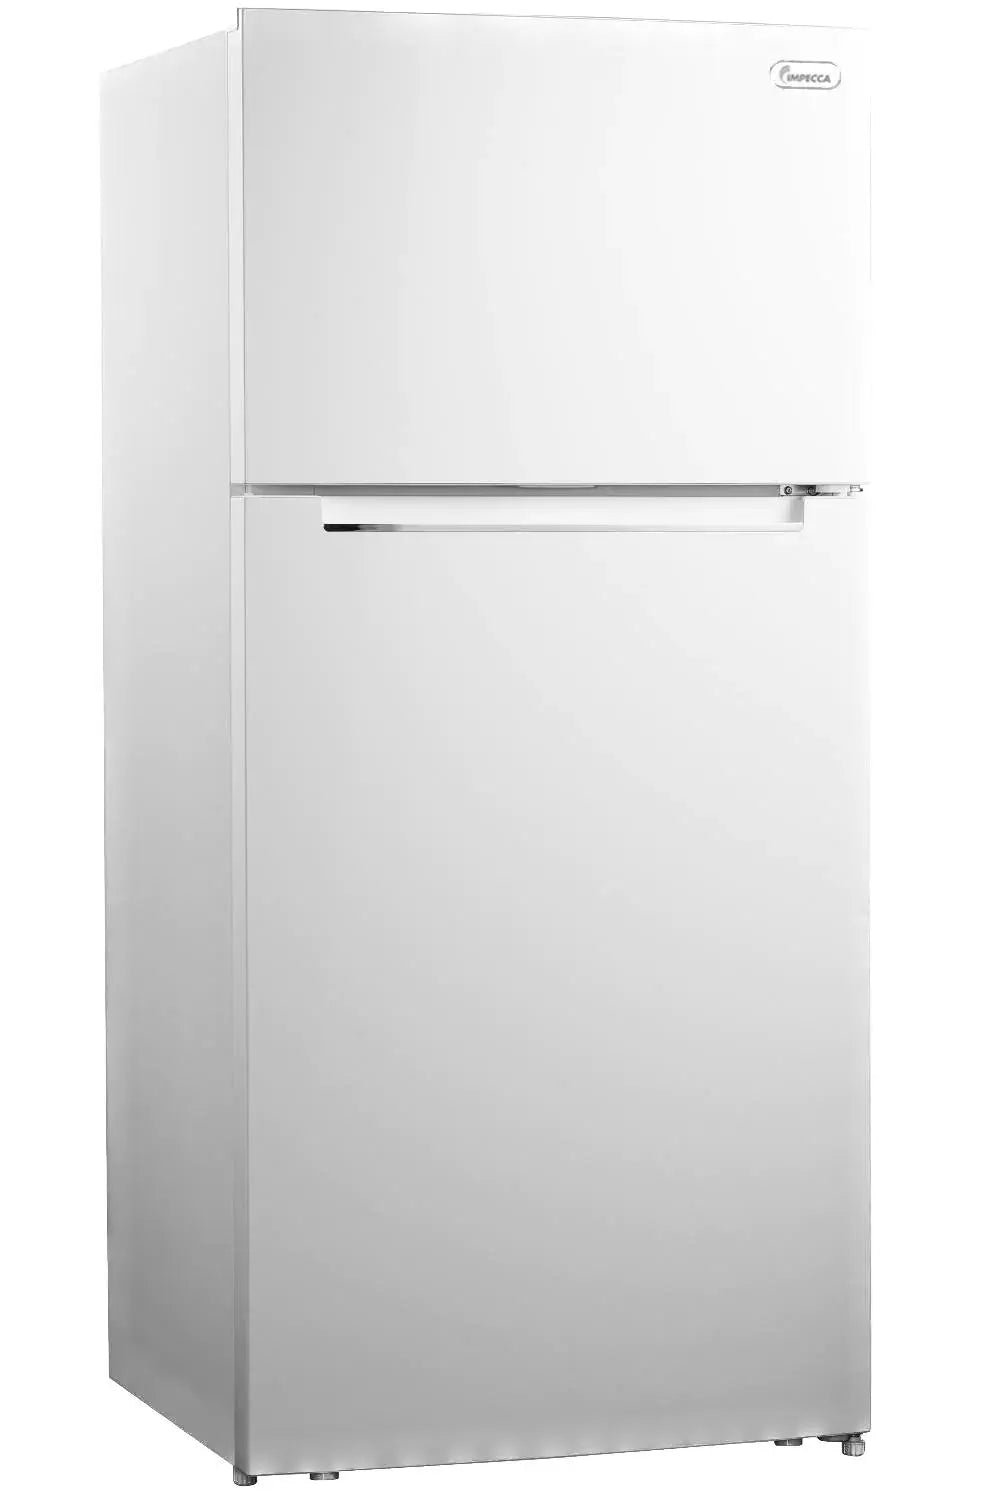 17 Cu. Ft. Counter Depth Refrigerator, Top Mount Freezer (White) | Impecca | Fridge.com